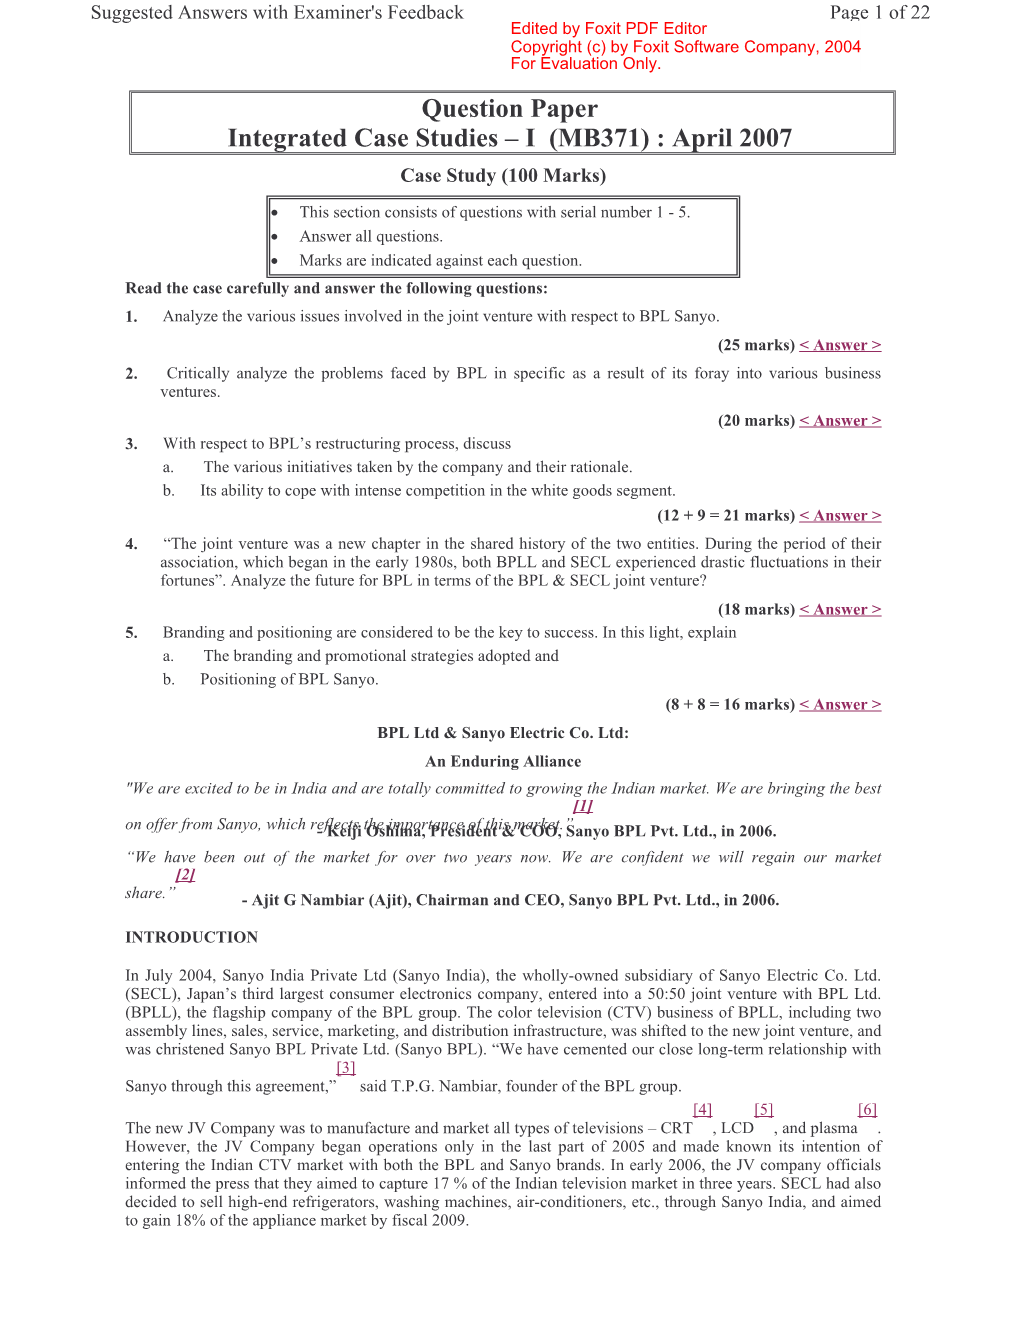 Question Paper Integrated Case Studies Œ I (MB371) : April 2007